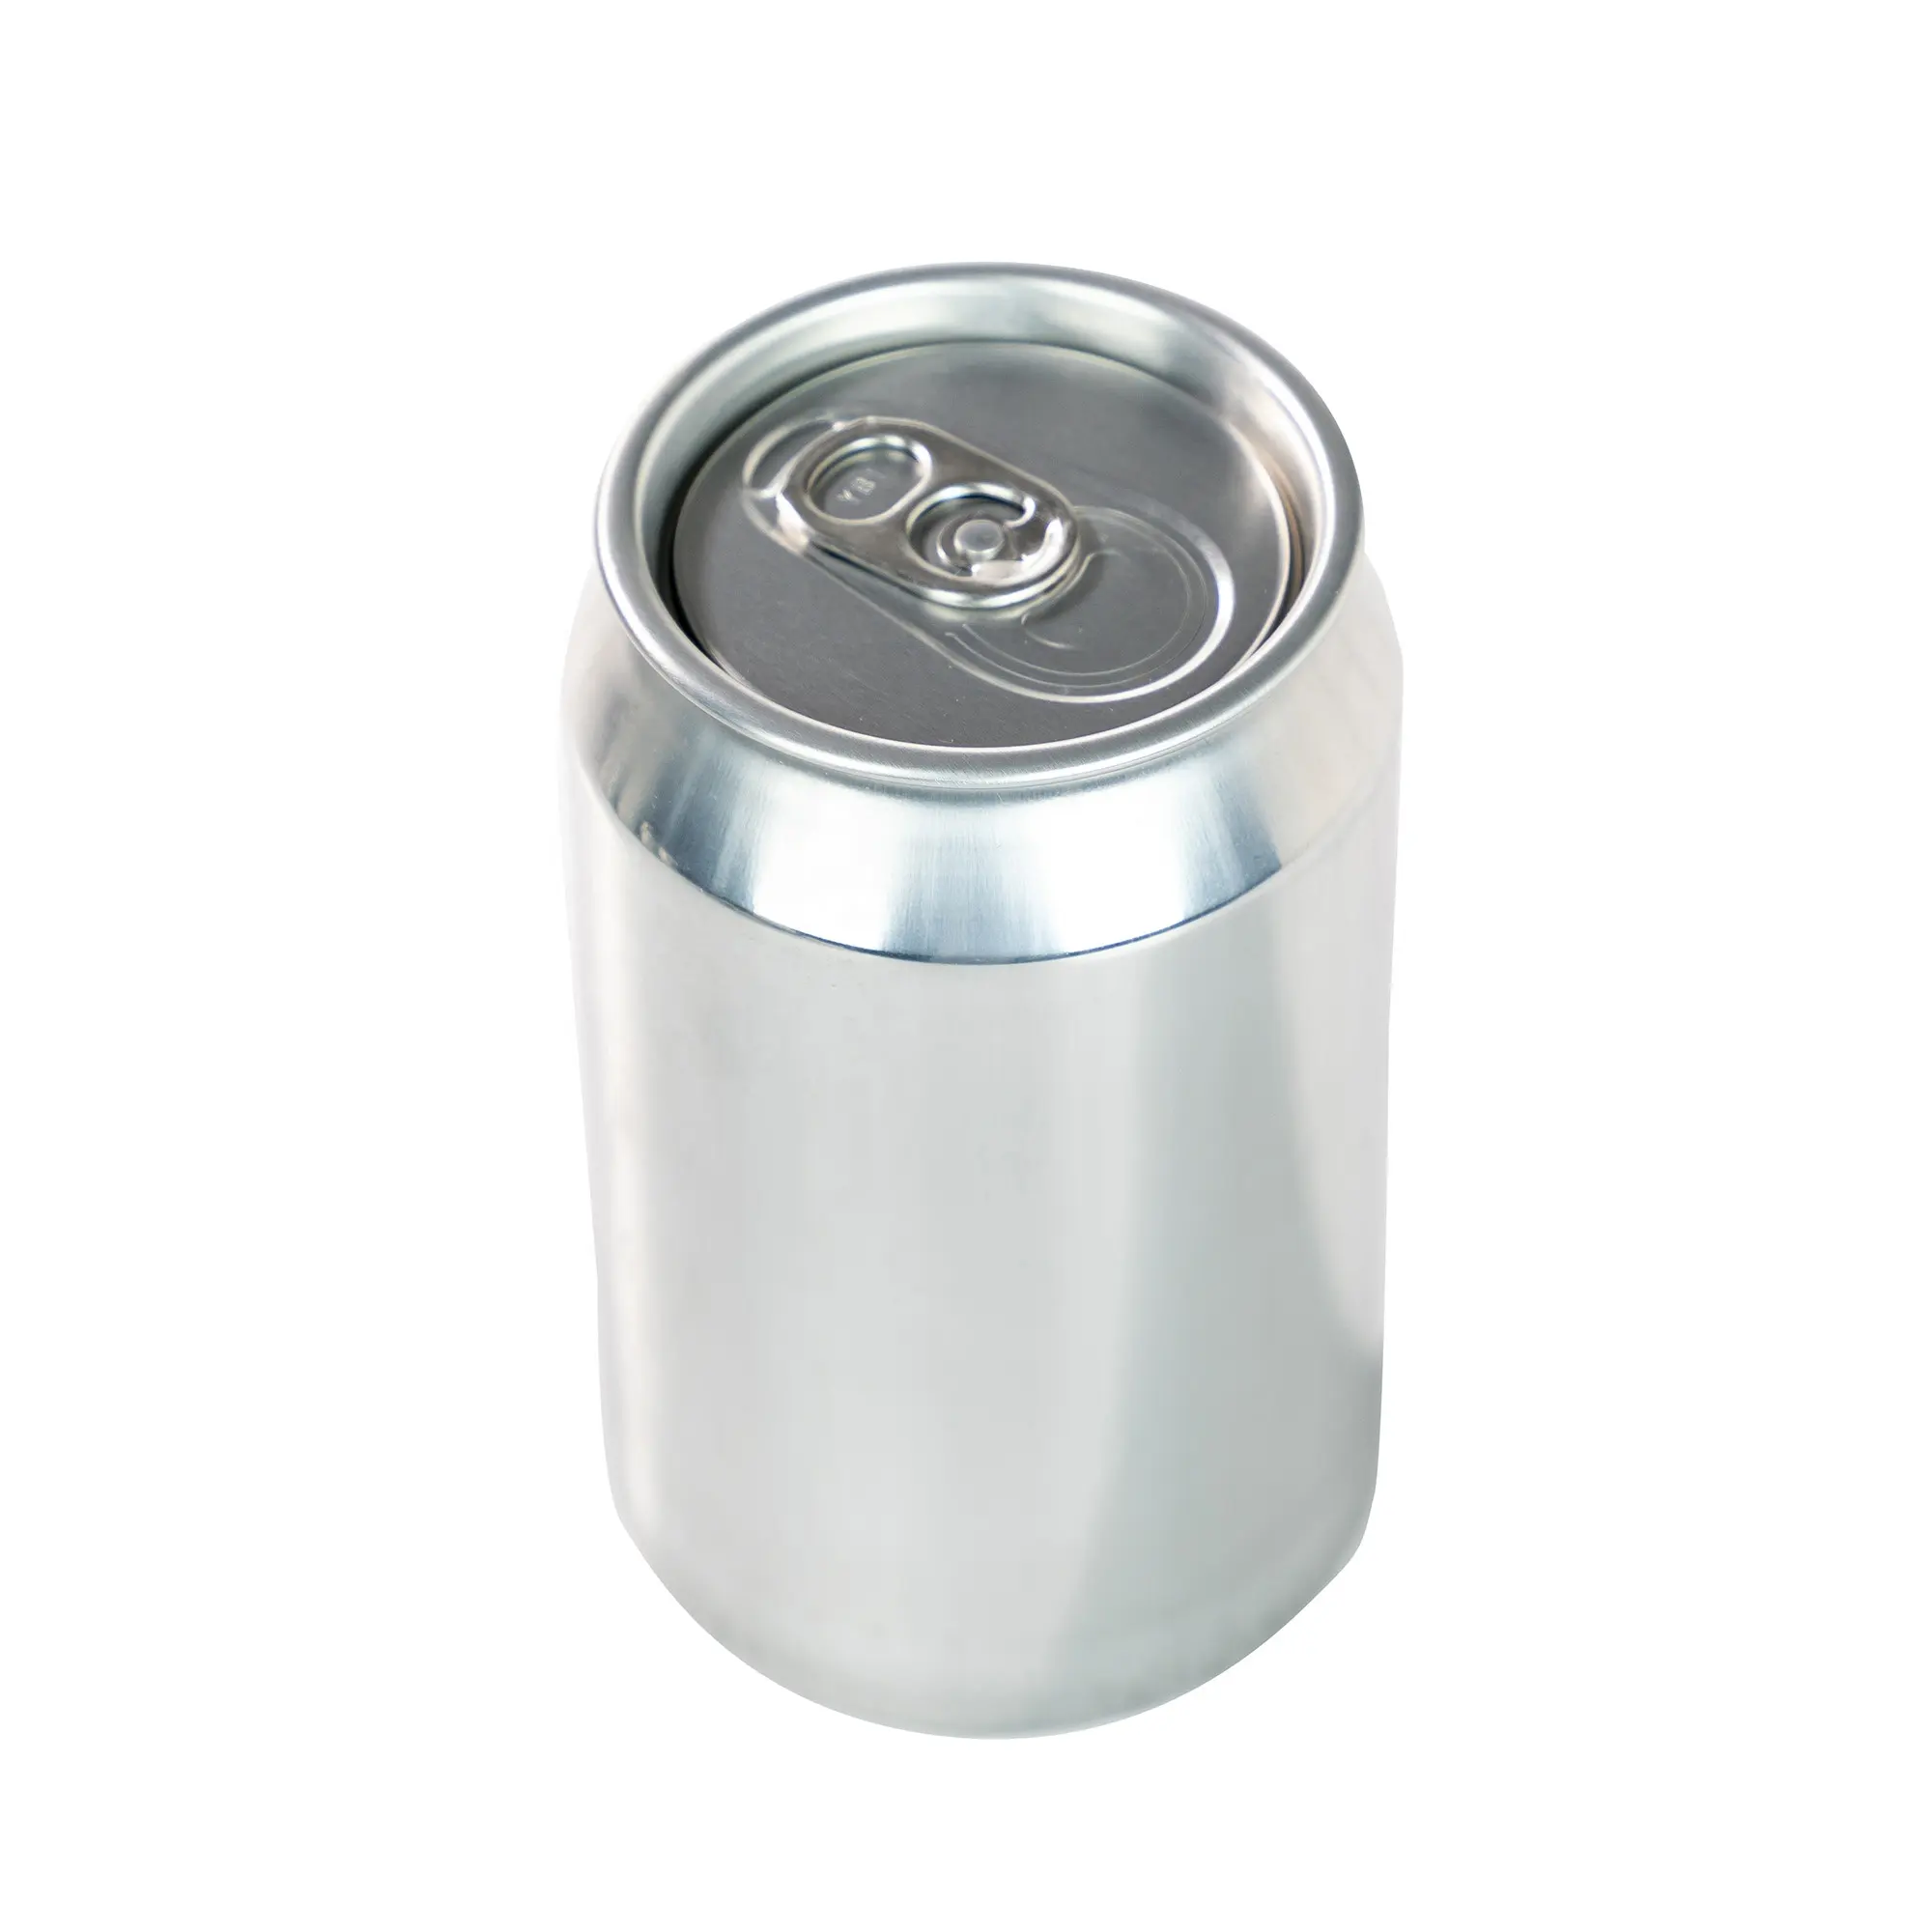 Nuevo diseño, 330ml, 12oz, lata de bebida de aluminio vacía, extremo abierto fácil para tapa de refrescos, café, jugo, té, bebida